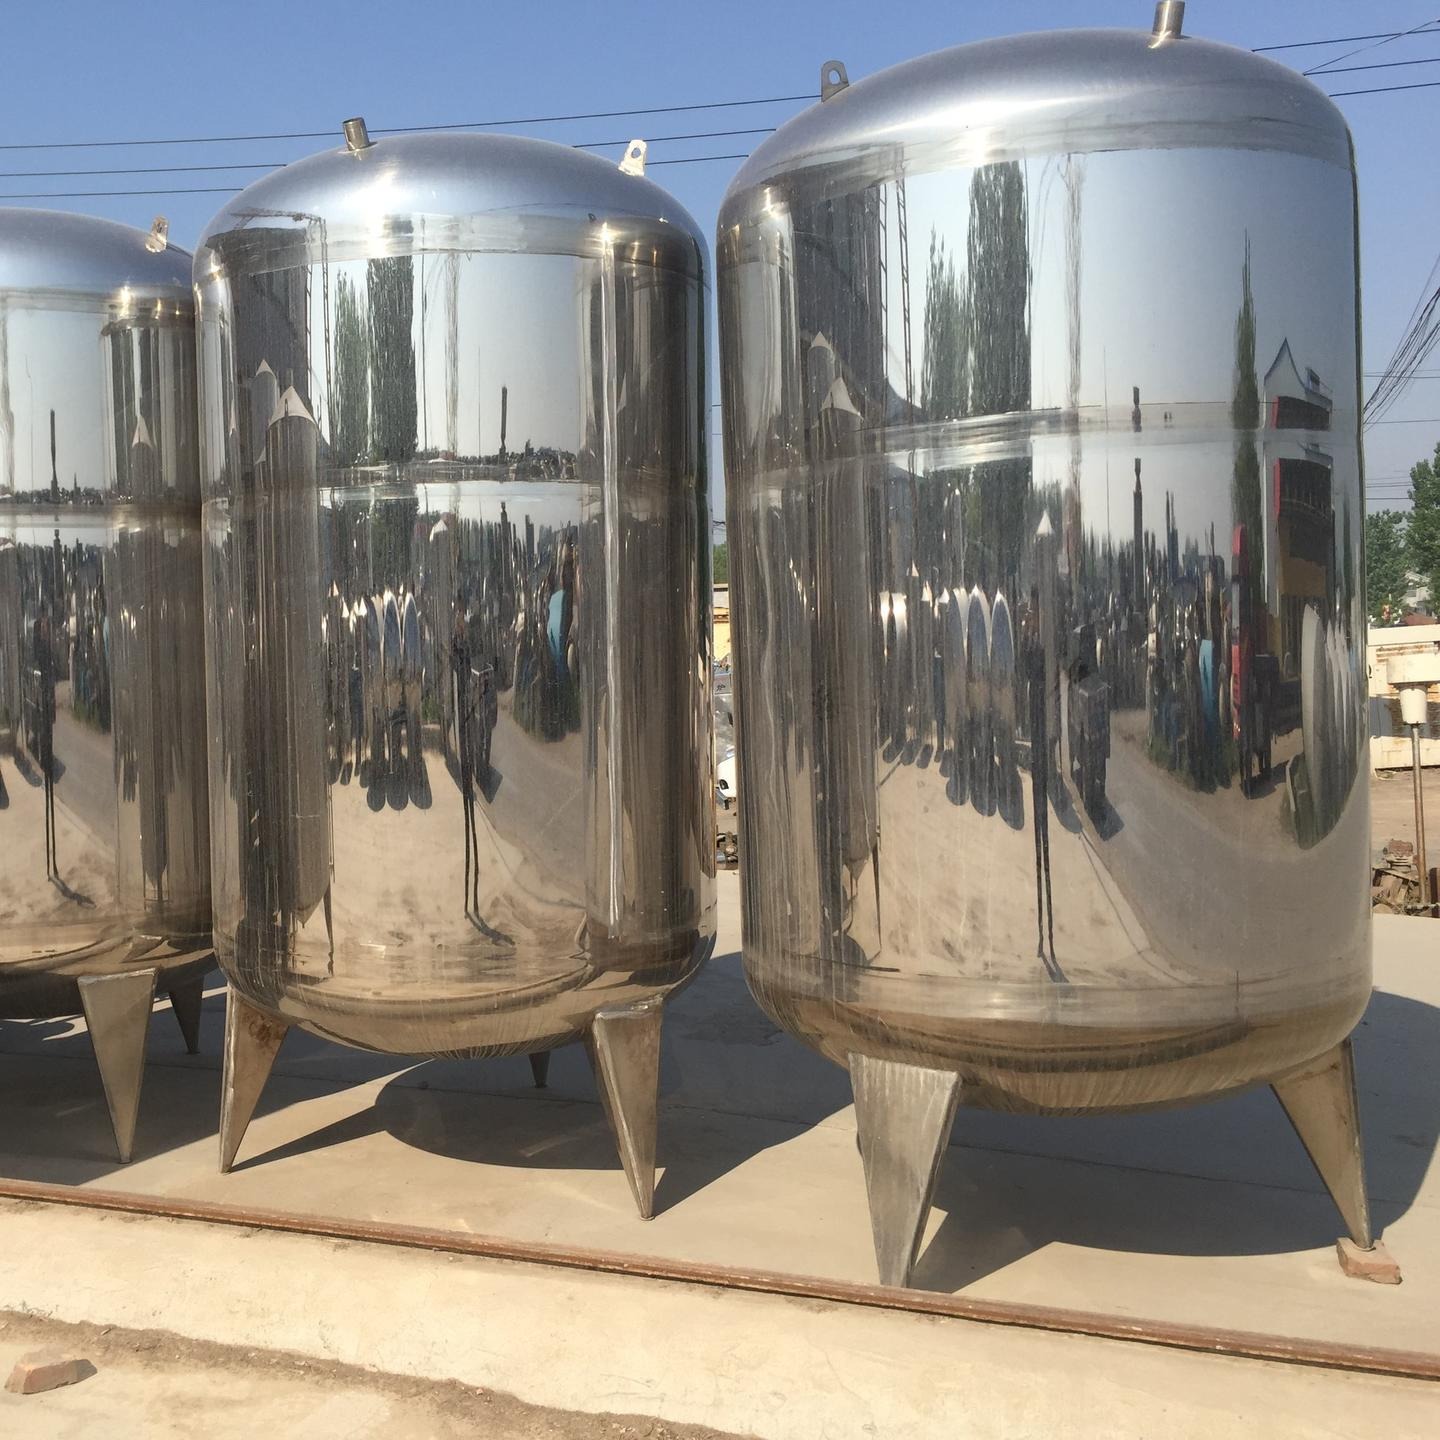 回收二手不锈钢储罐   玻璃钢储罐   回收二手不锈钢发酵罐   二手生物发酵罐